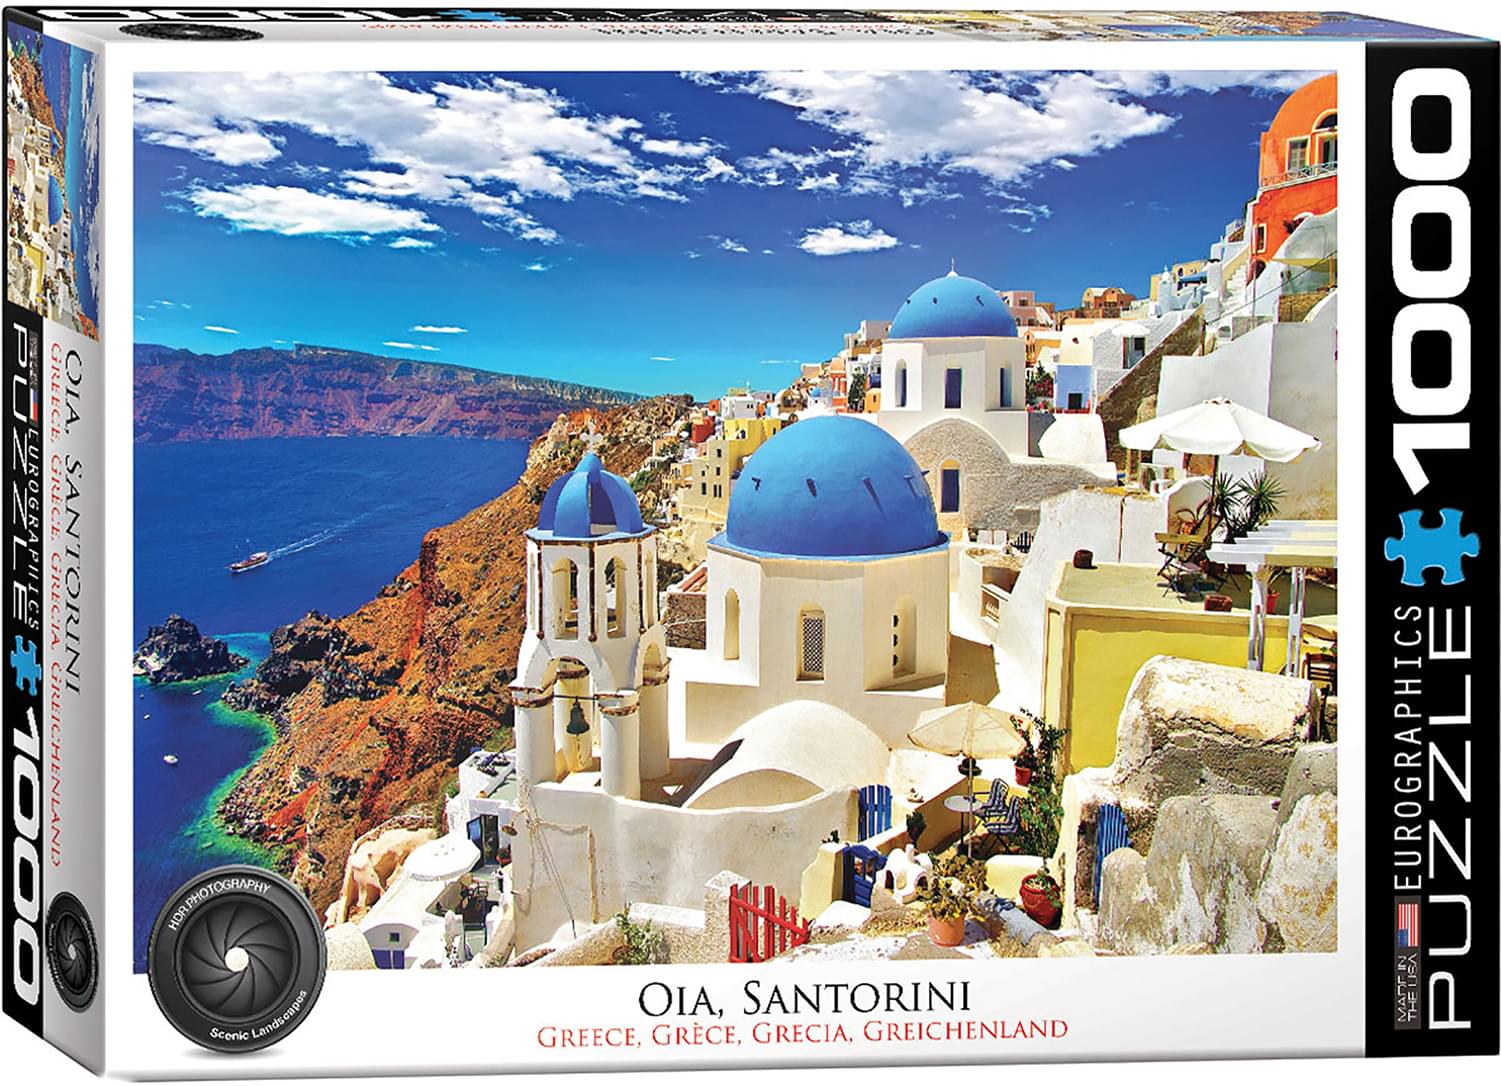 Oia Santorini Greece 1000 Piece Jigsaw Puzzle